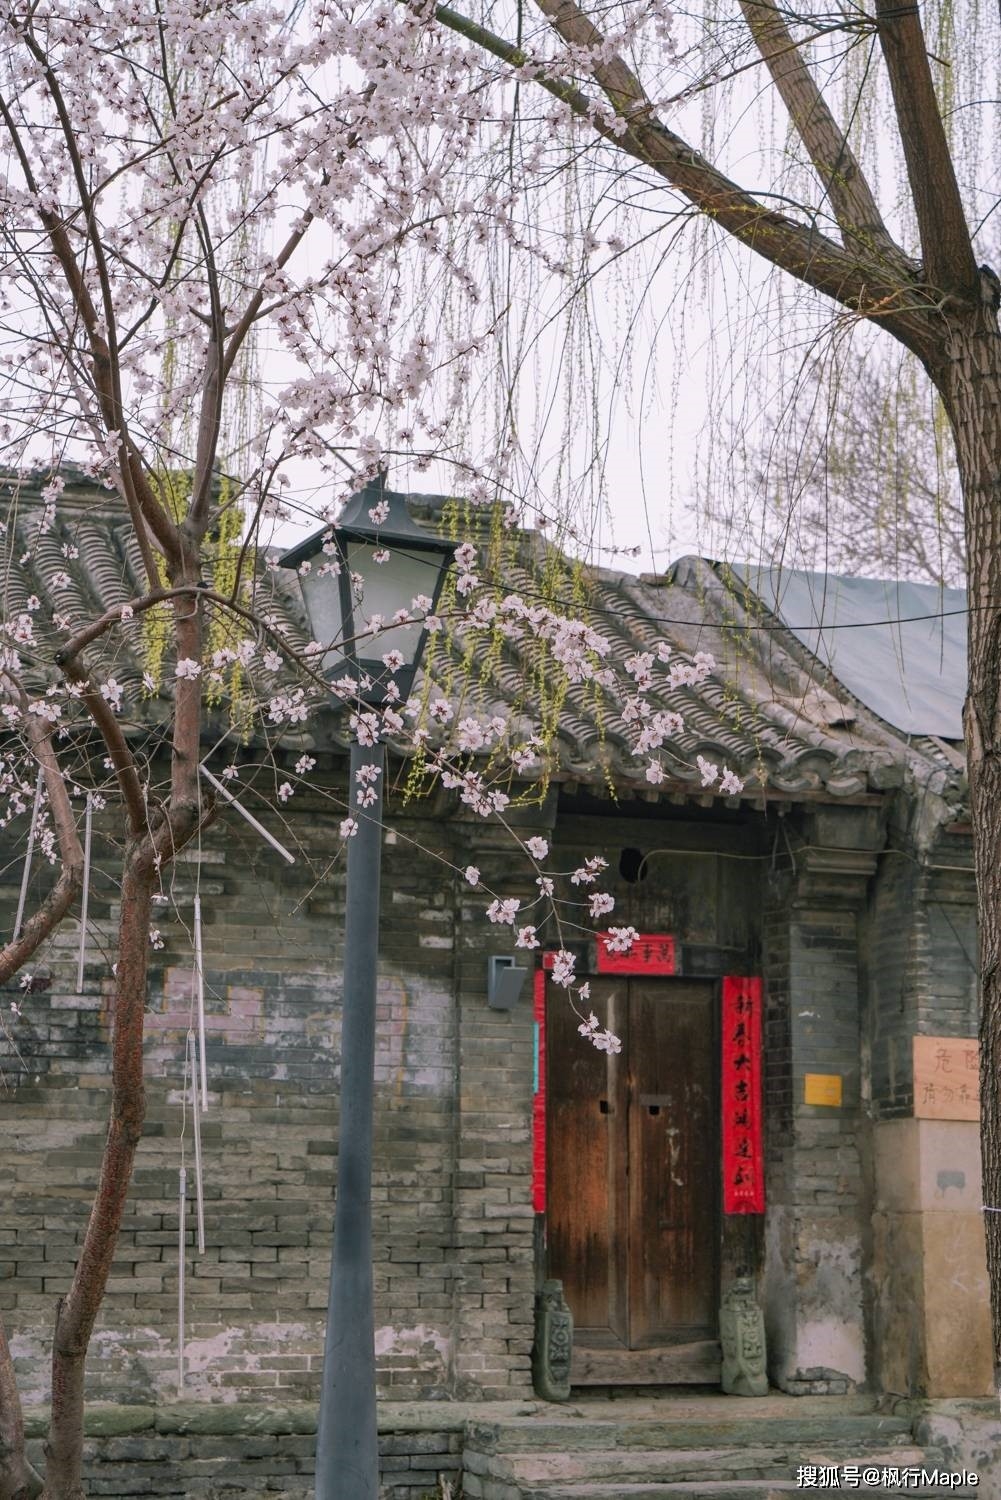 Trung Quốc: Ngắm hoa anh đào nở rộ ven sông ở Bắc Kinh